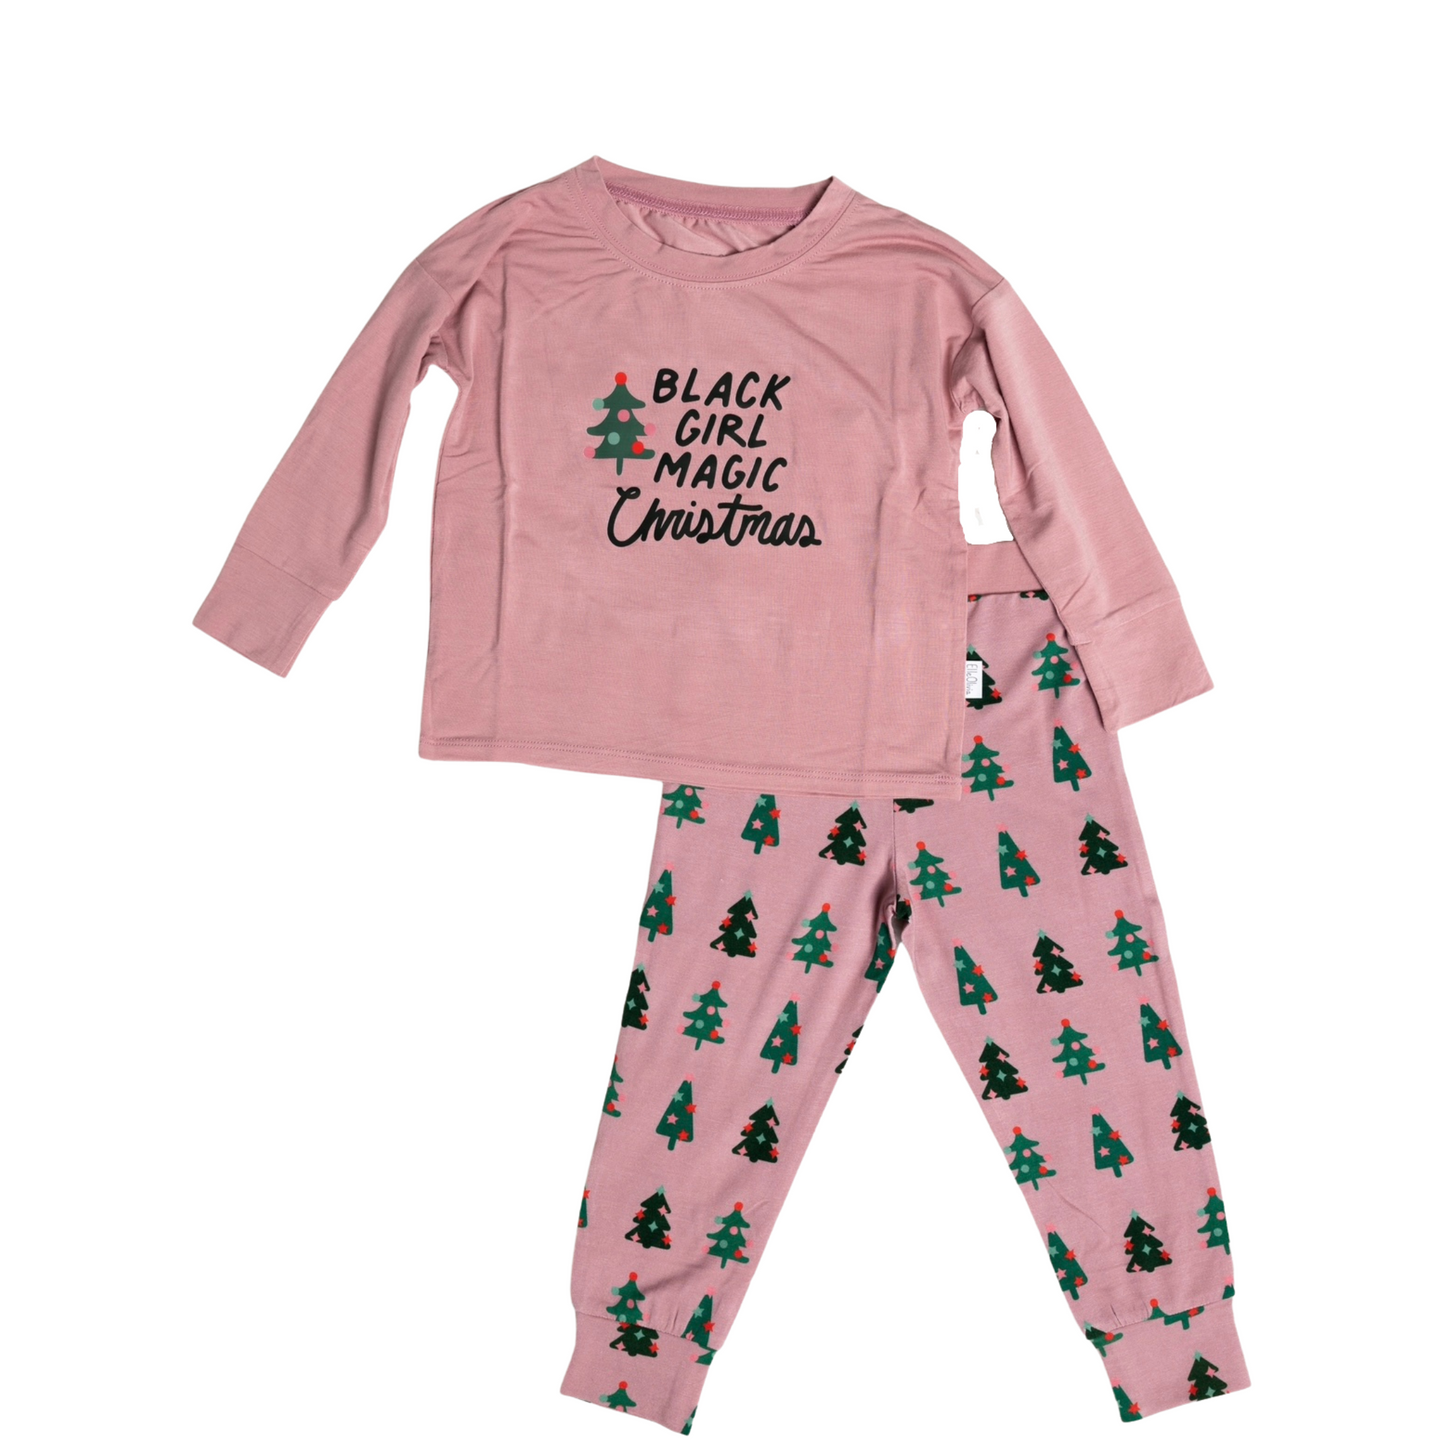 Black Girl Magic Christmas Pajama Set